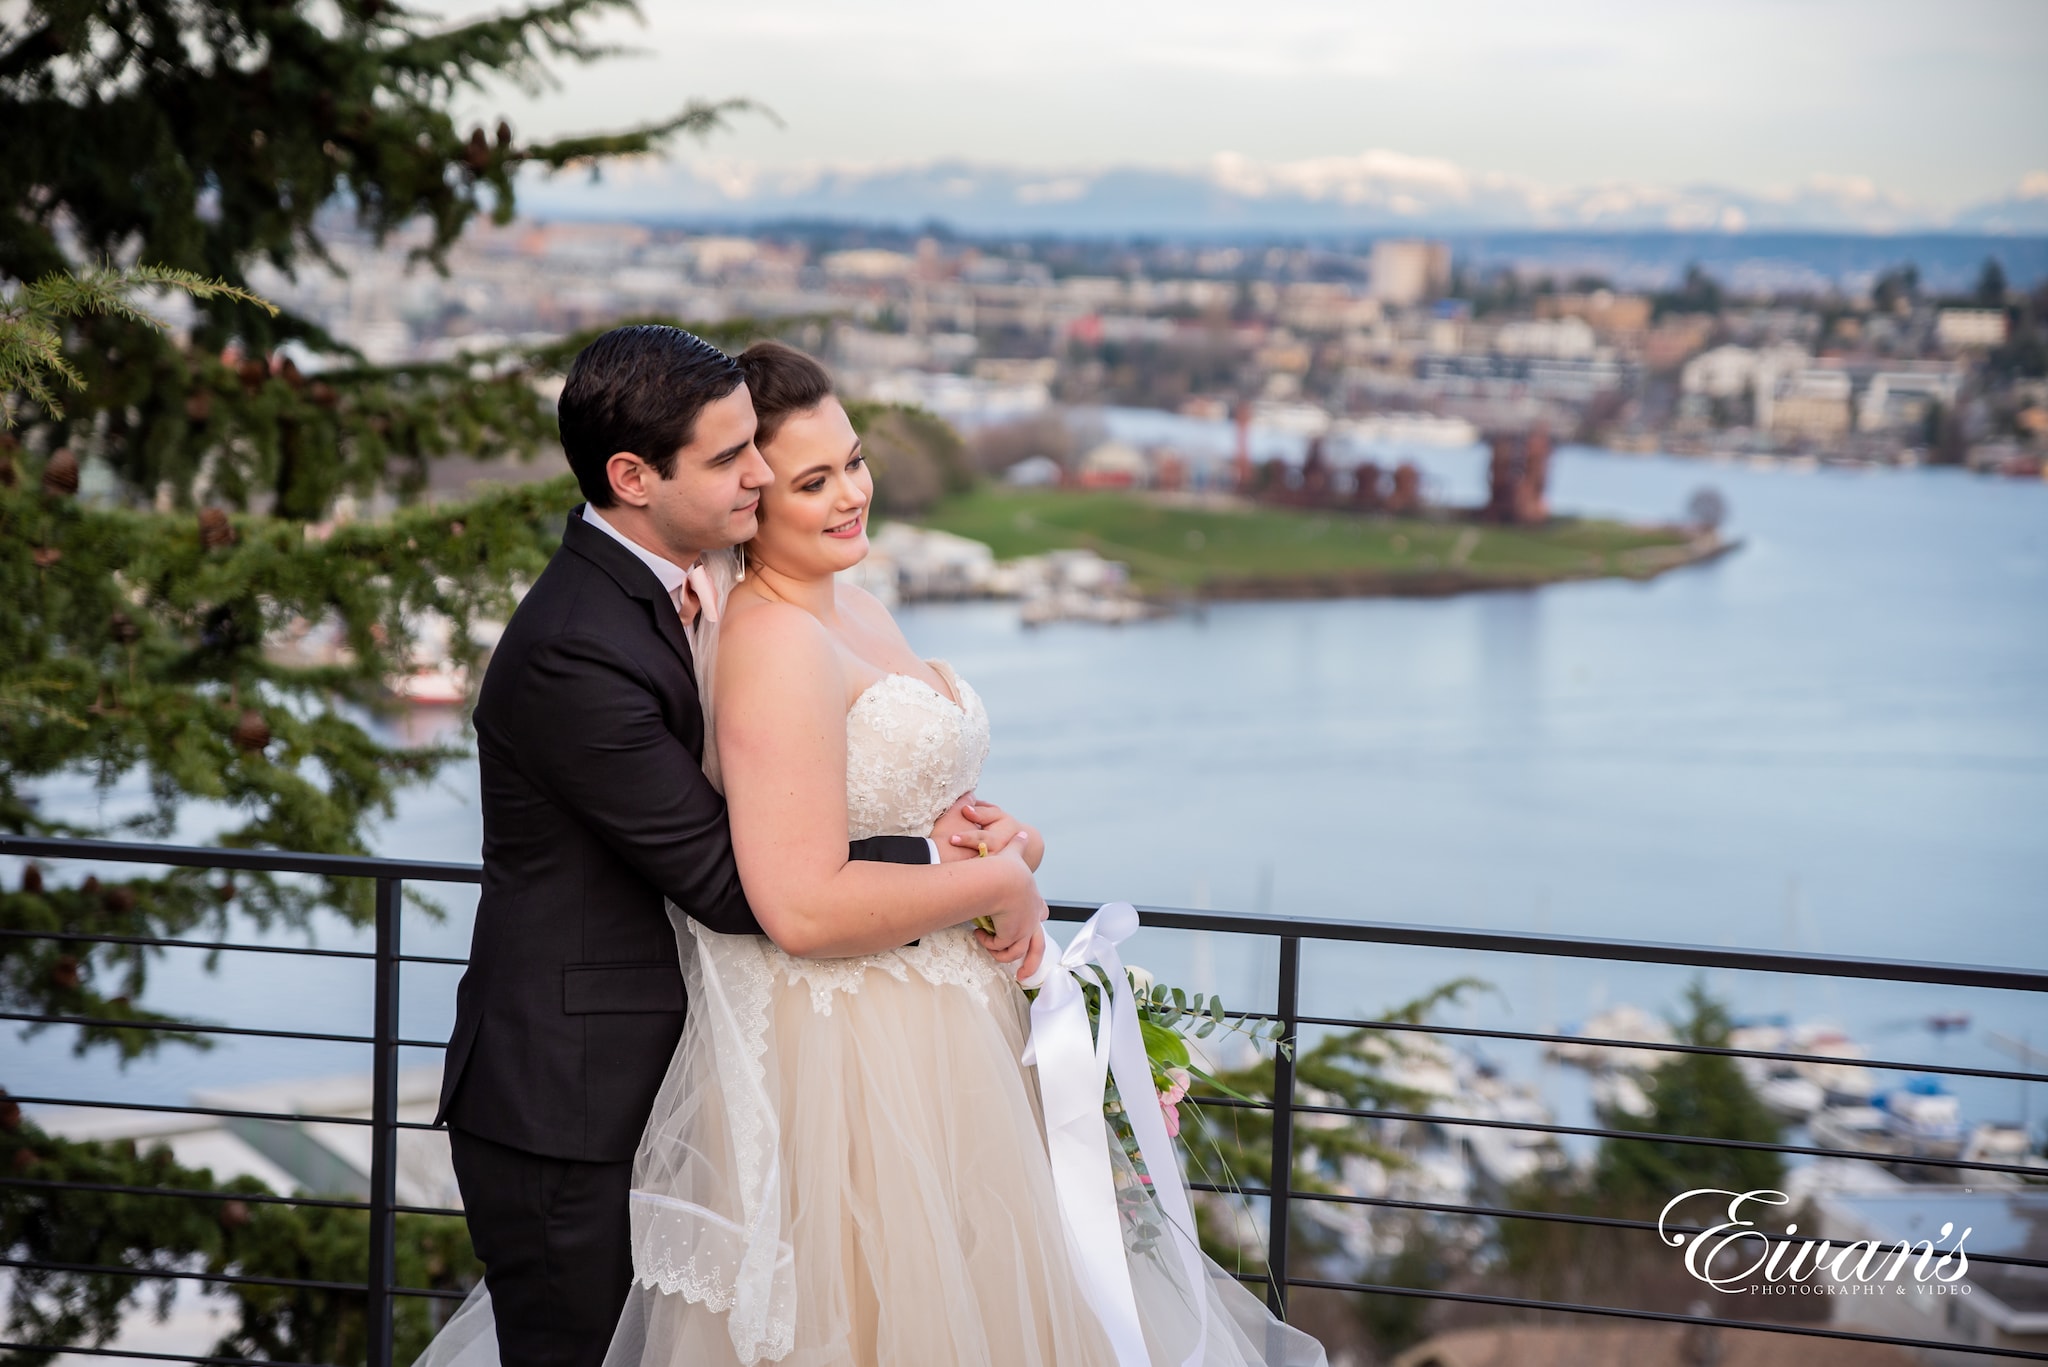 man in black suit kissing woman in white wedding dress on bridge during daytime